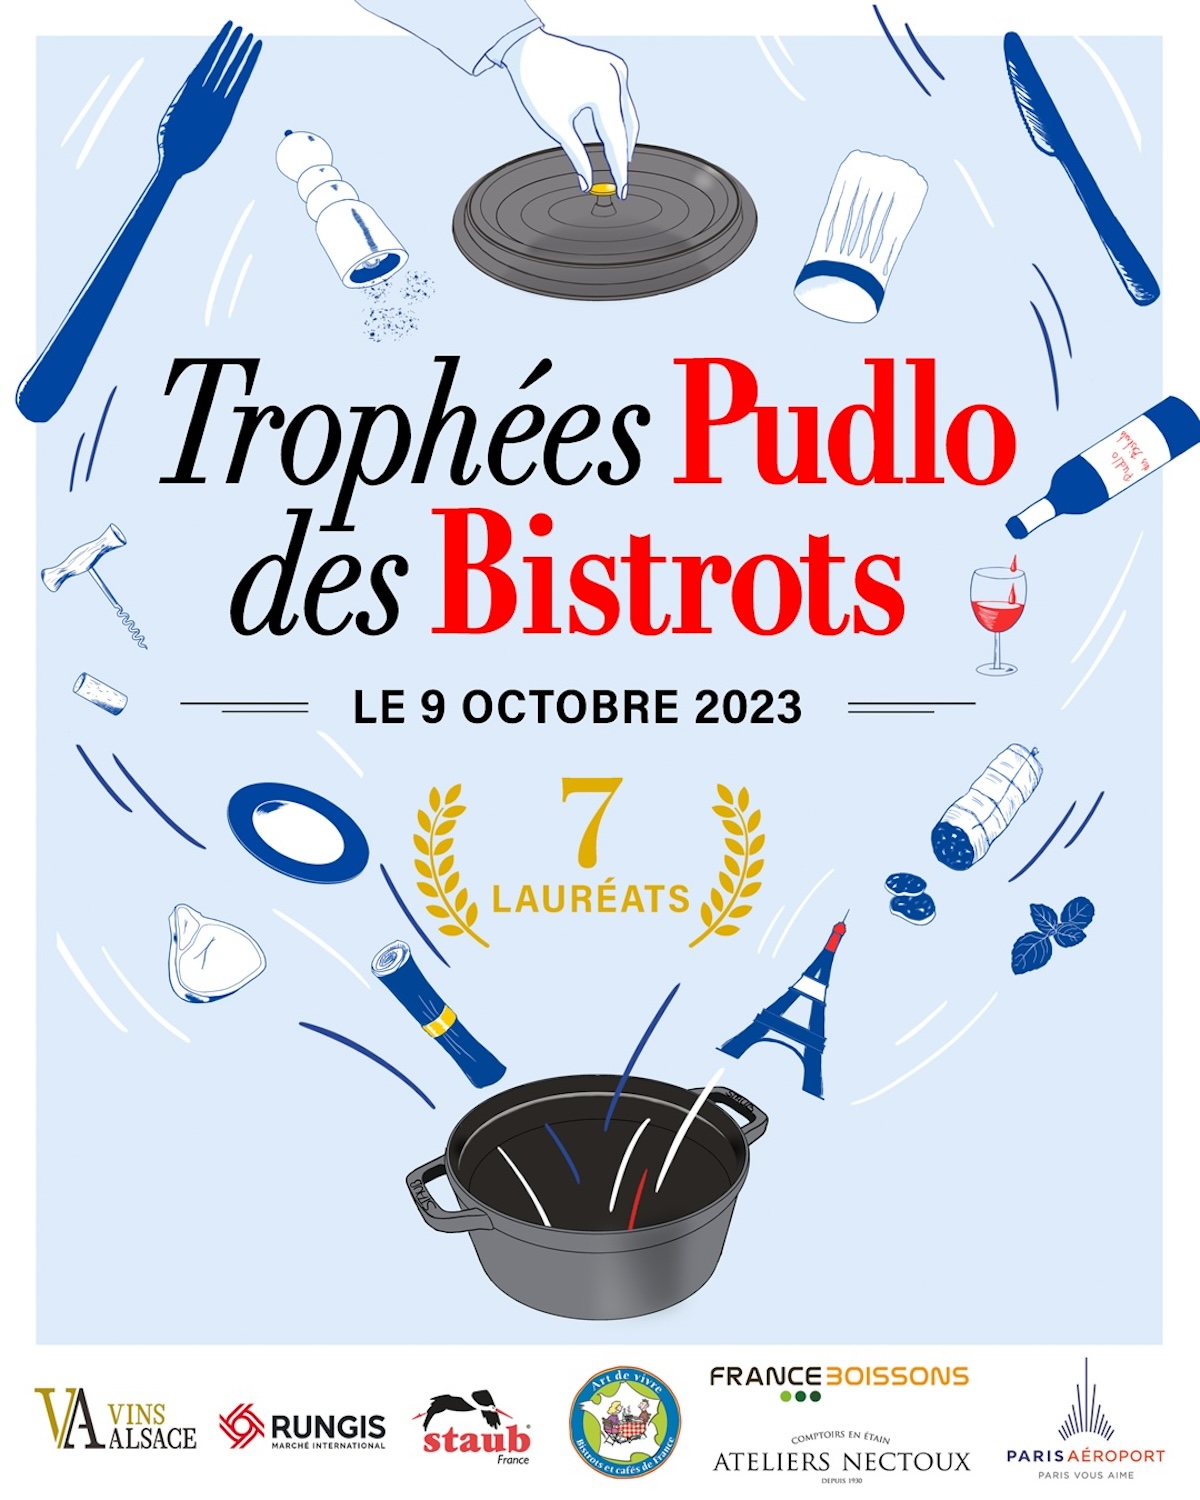 Trophées Pudlo des Bistros 2023